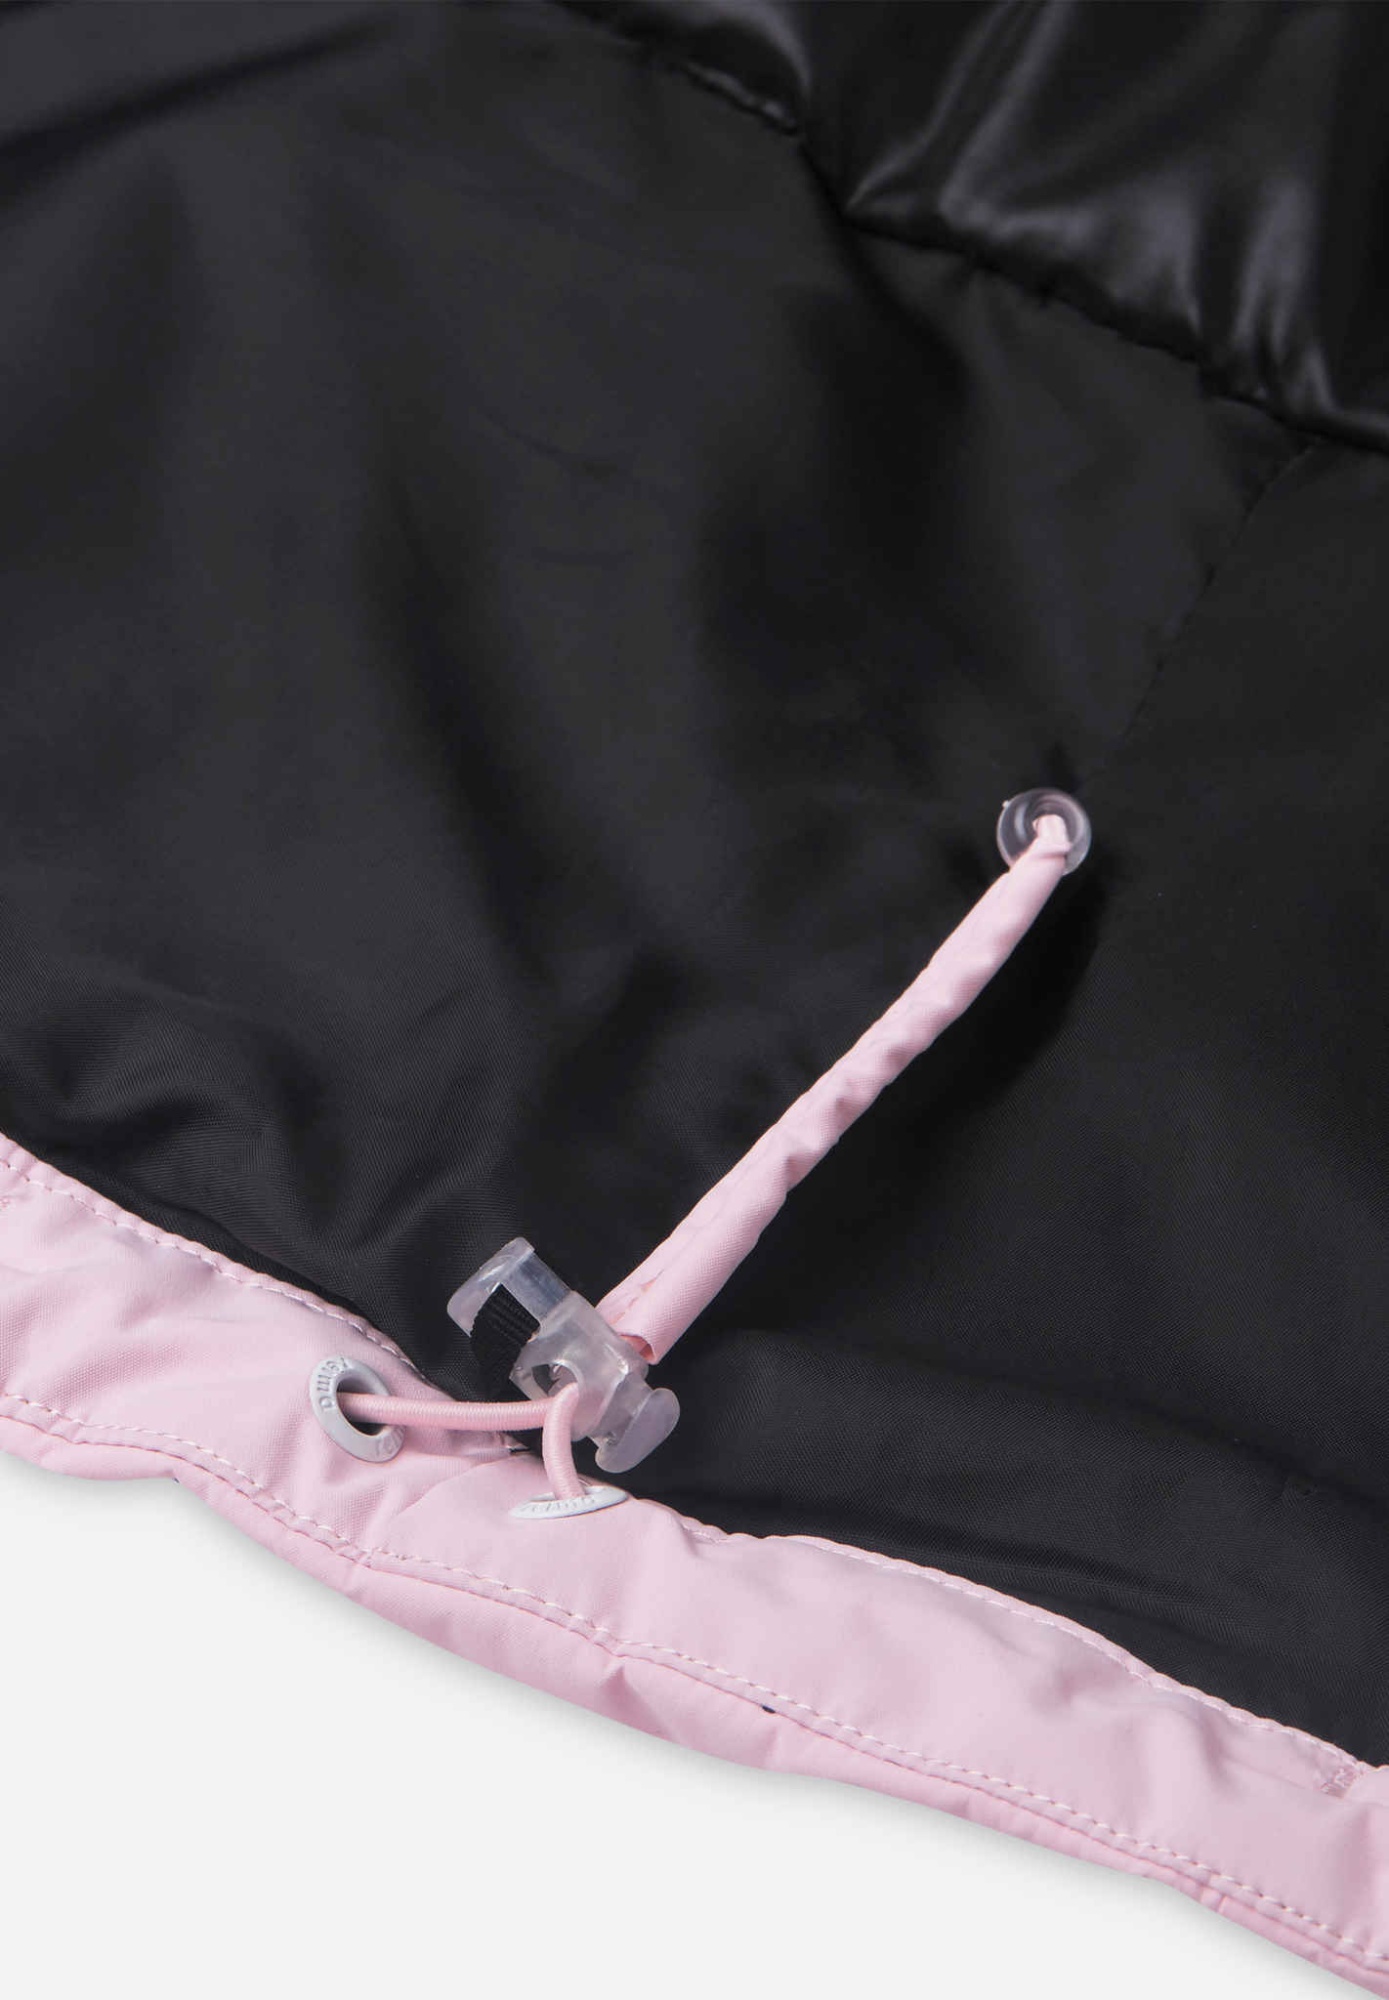 Зимняя куртка Reima Saivaara Розовый | фото